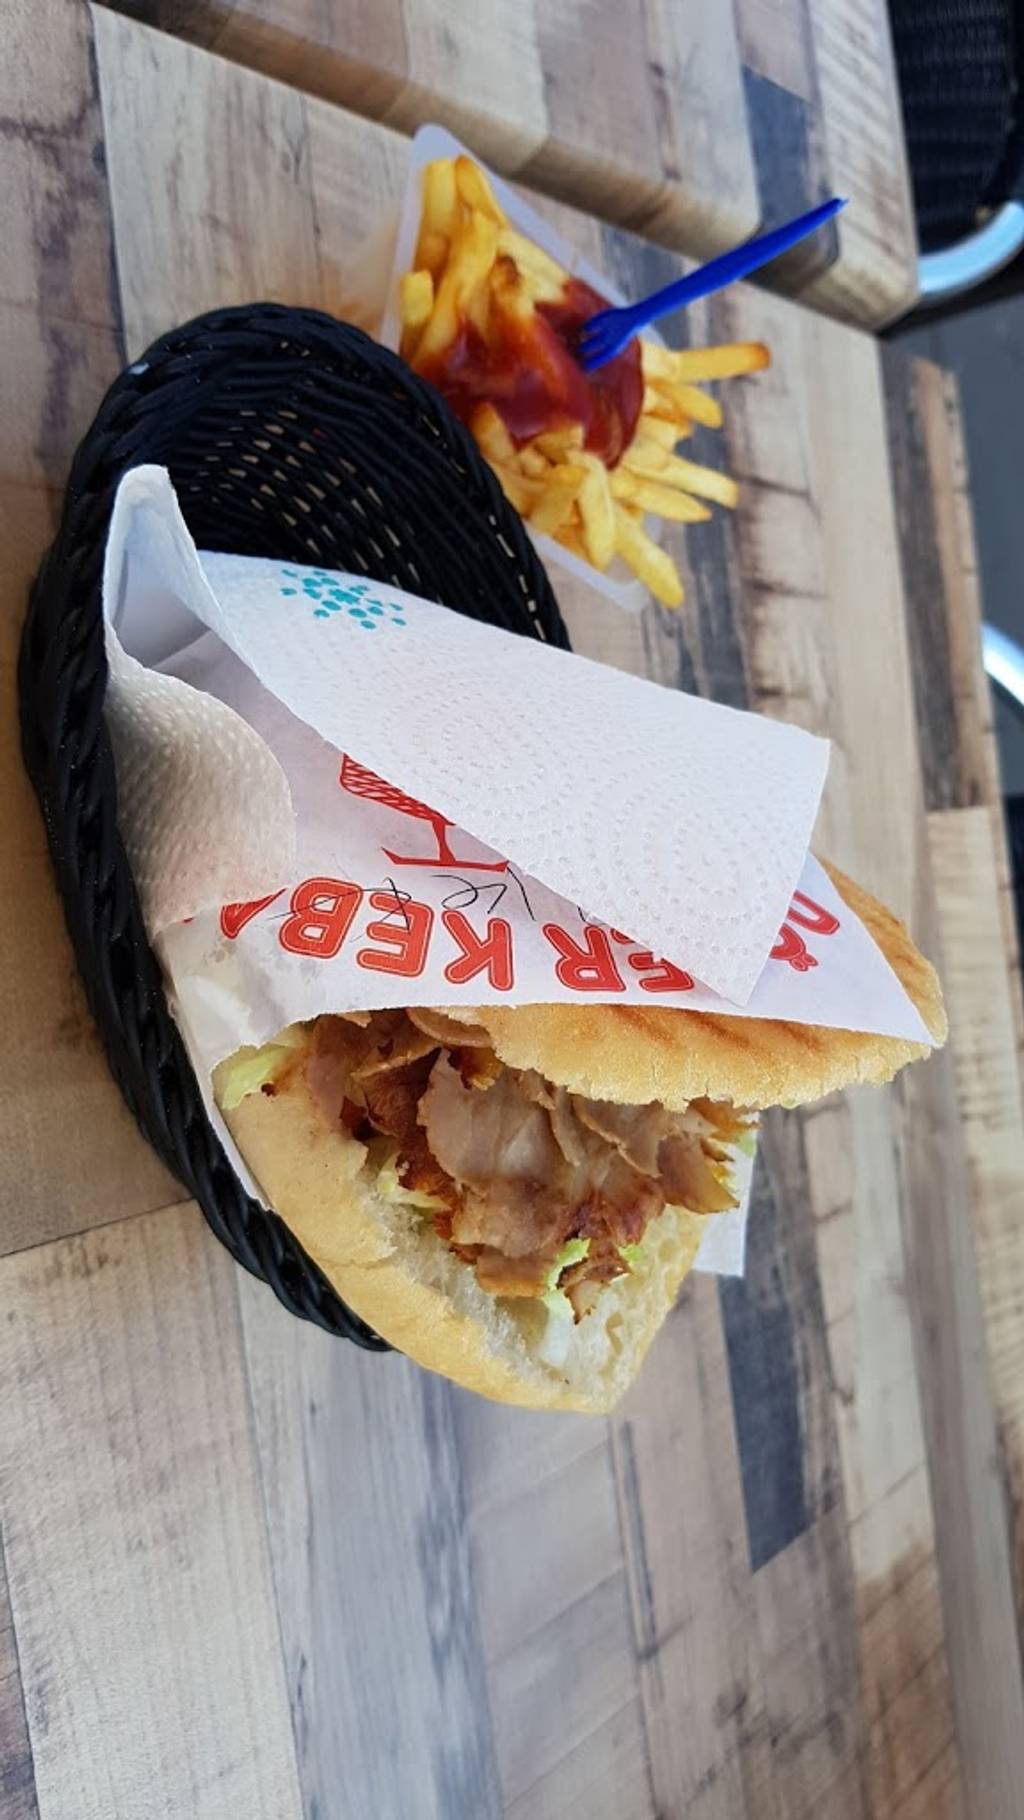 Lorraine Kebab Burger Chambéry - Food Junk food Fast food Cuisine Dish